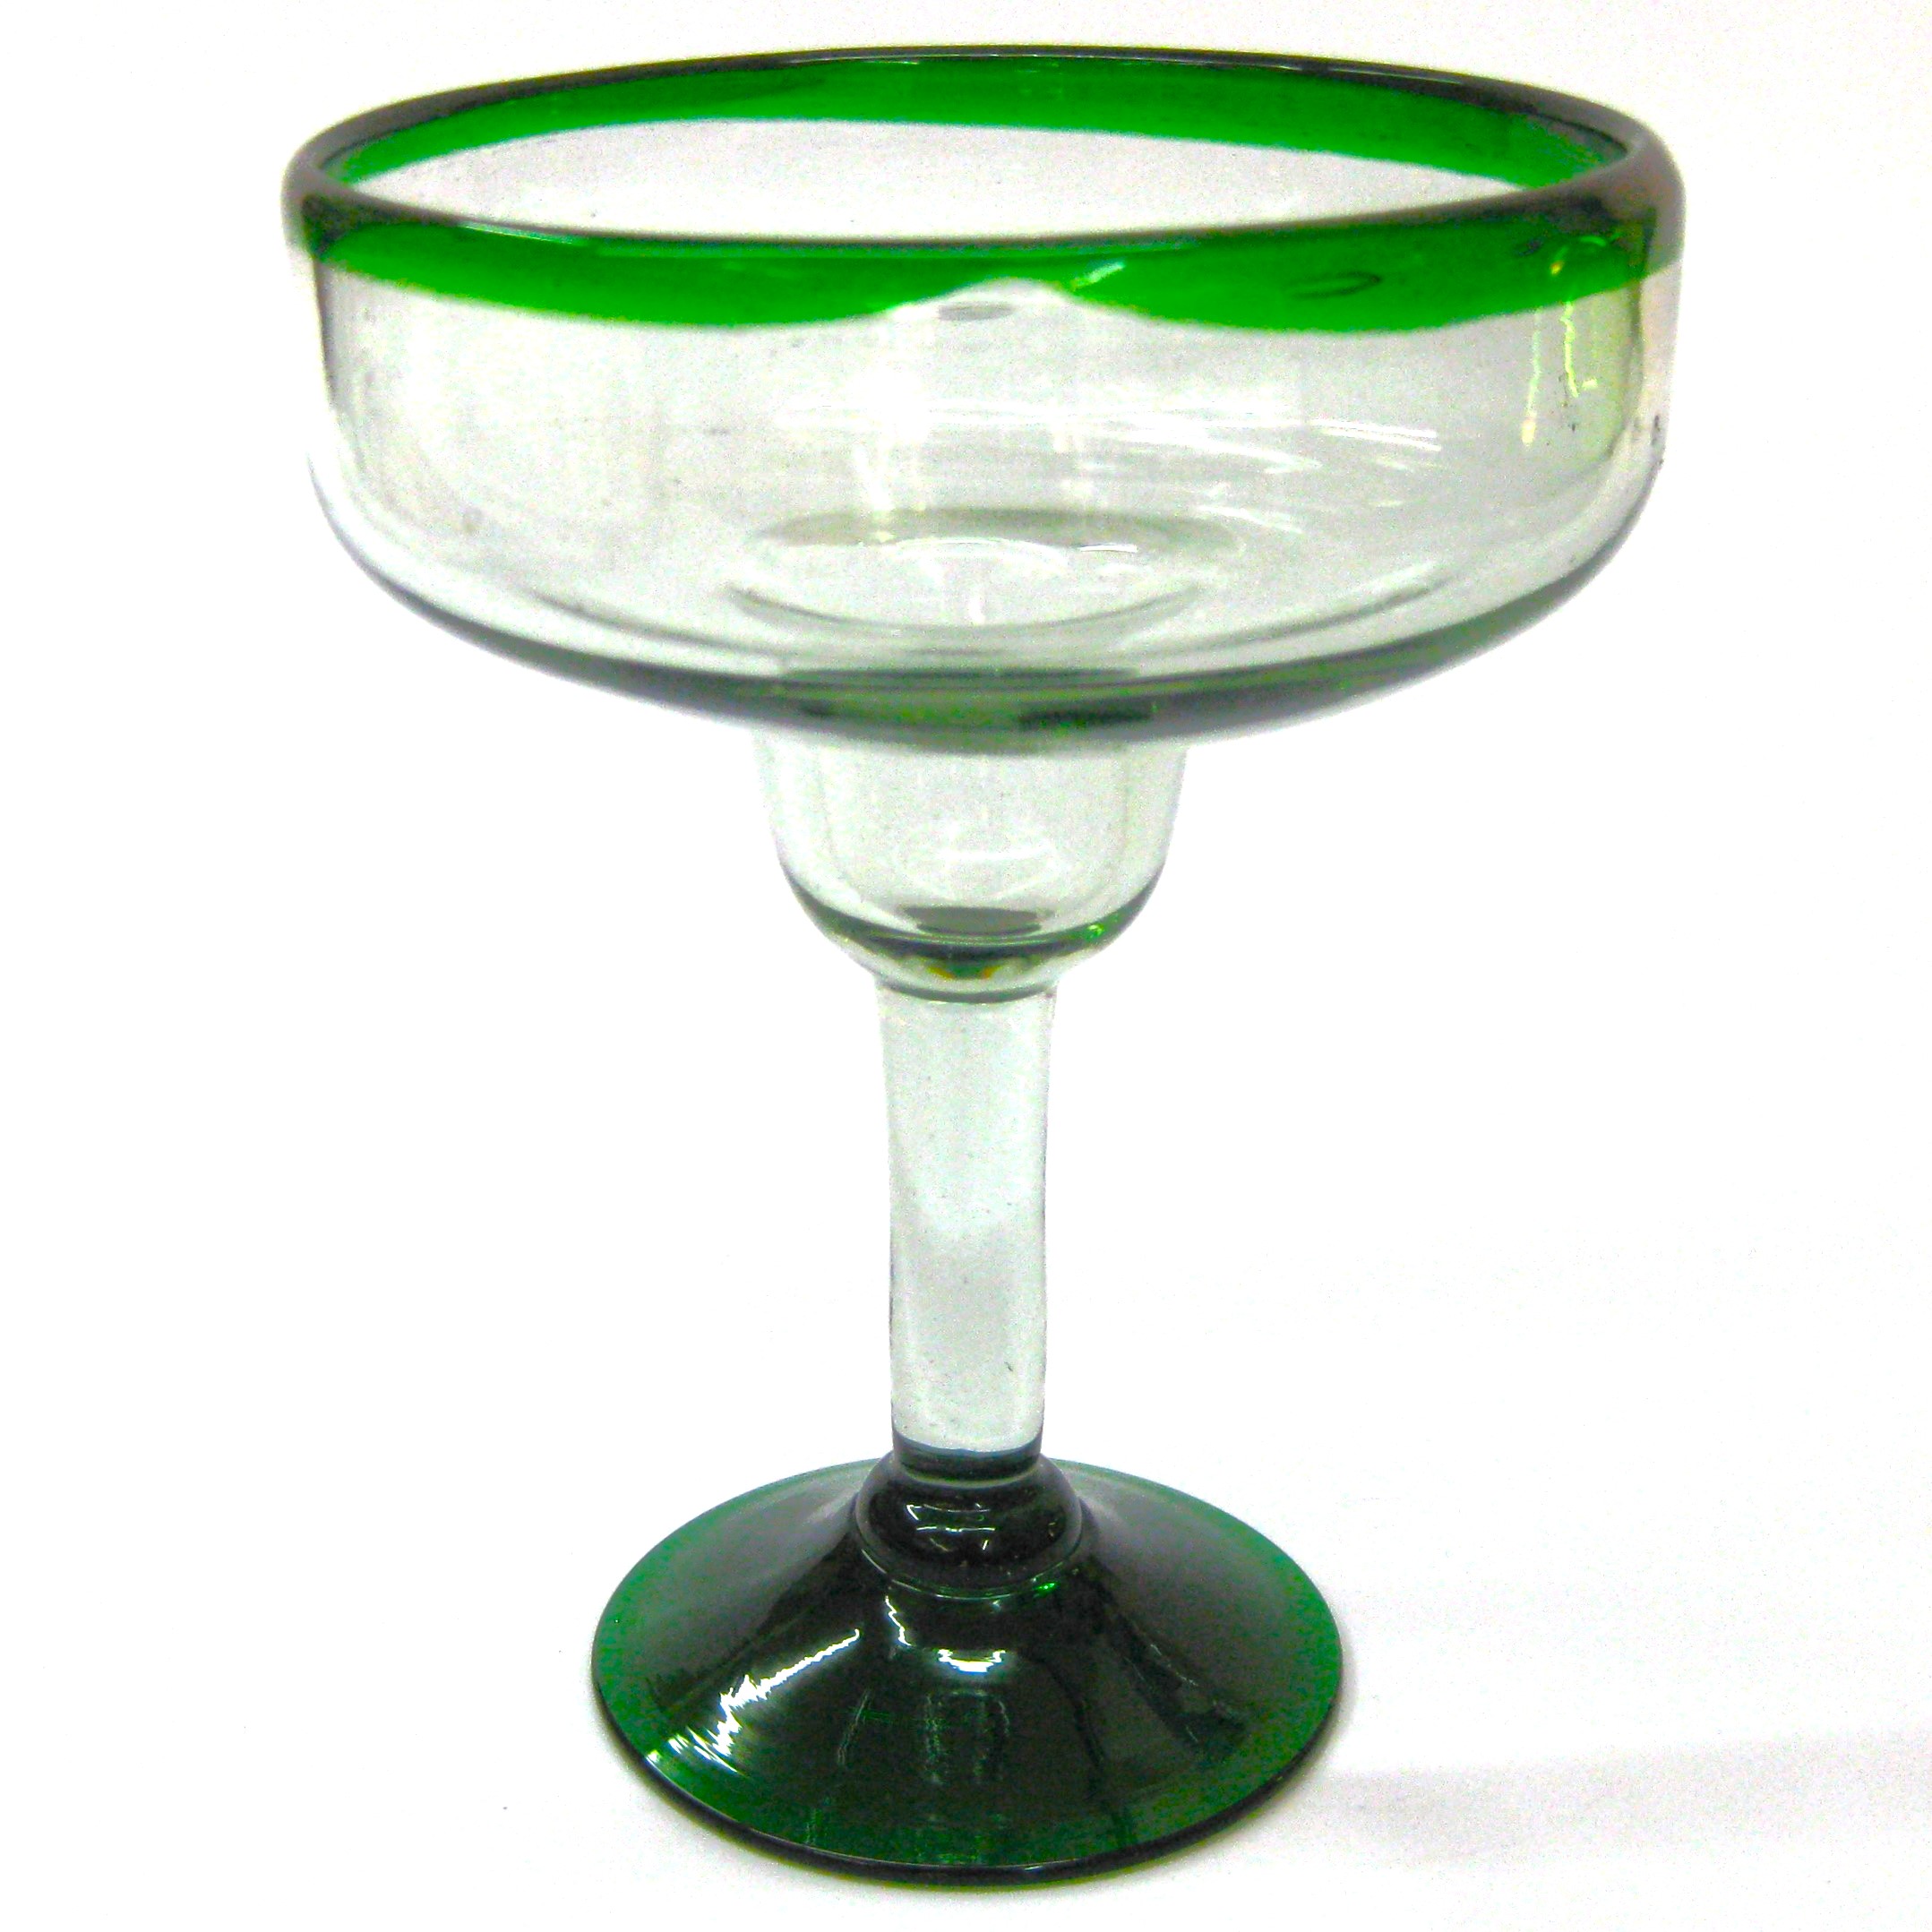 copas grandes para margarita con borde verde esmeralda, 14 oz, Vidrio Reciclado, Libre de Plomo y Toxinas